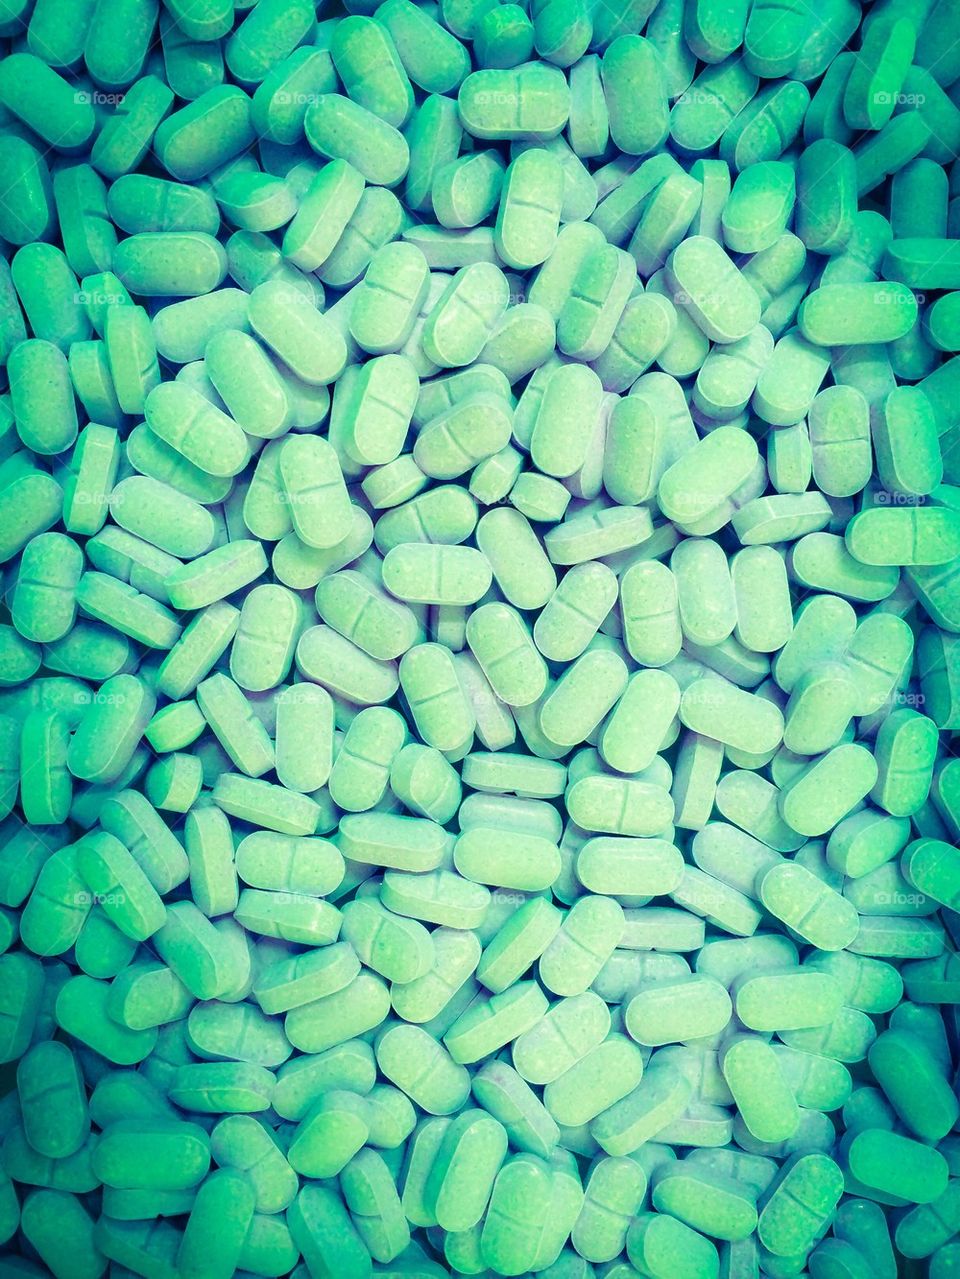 Green medication